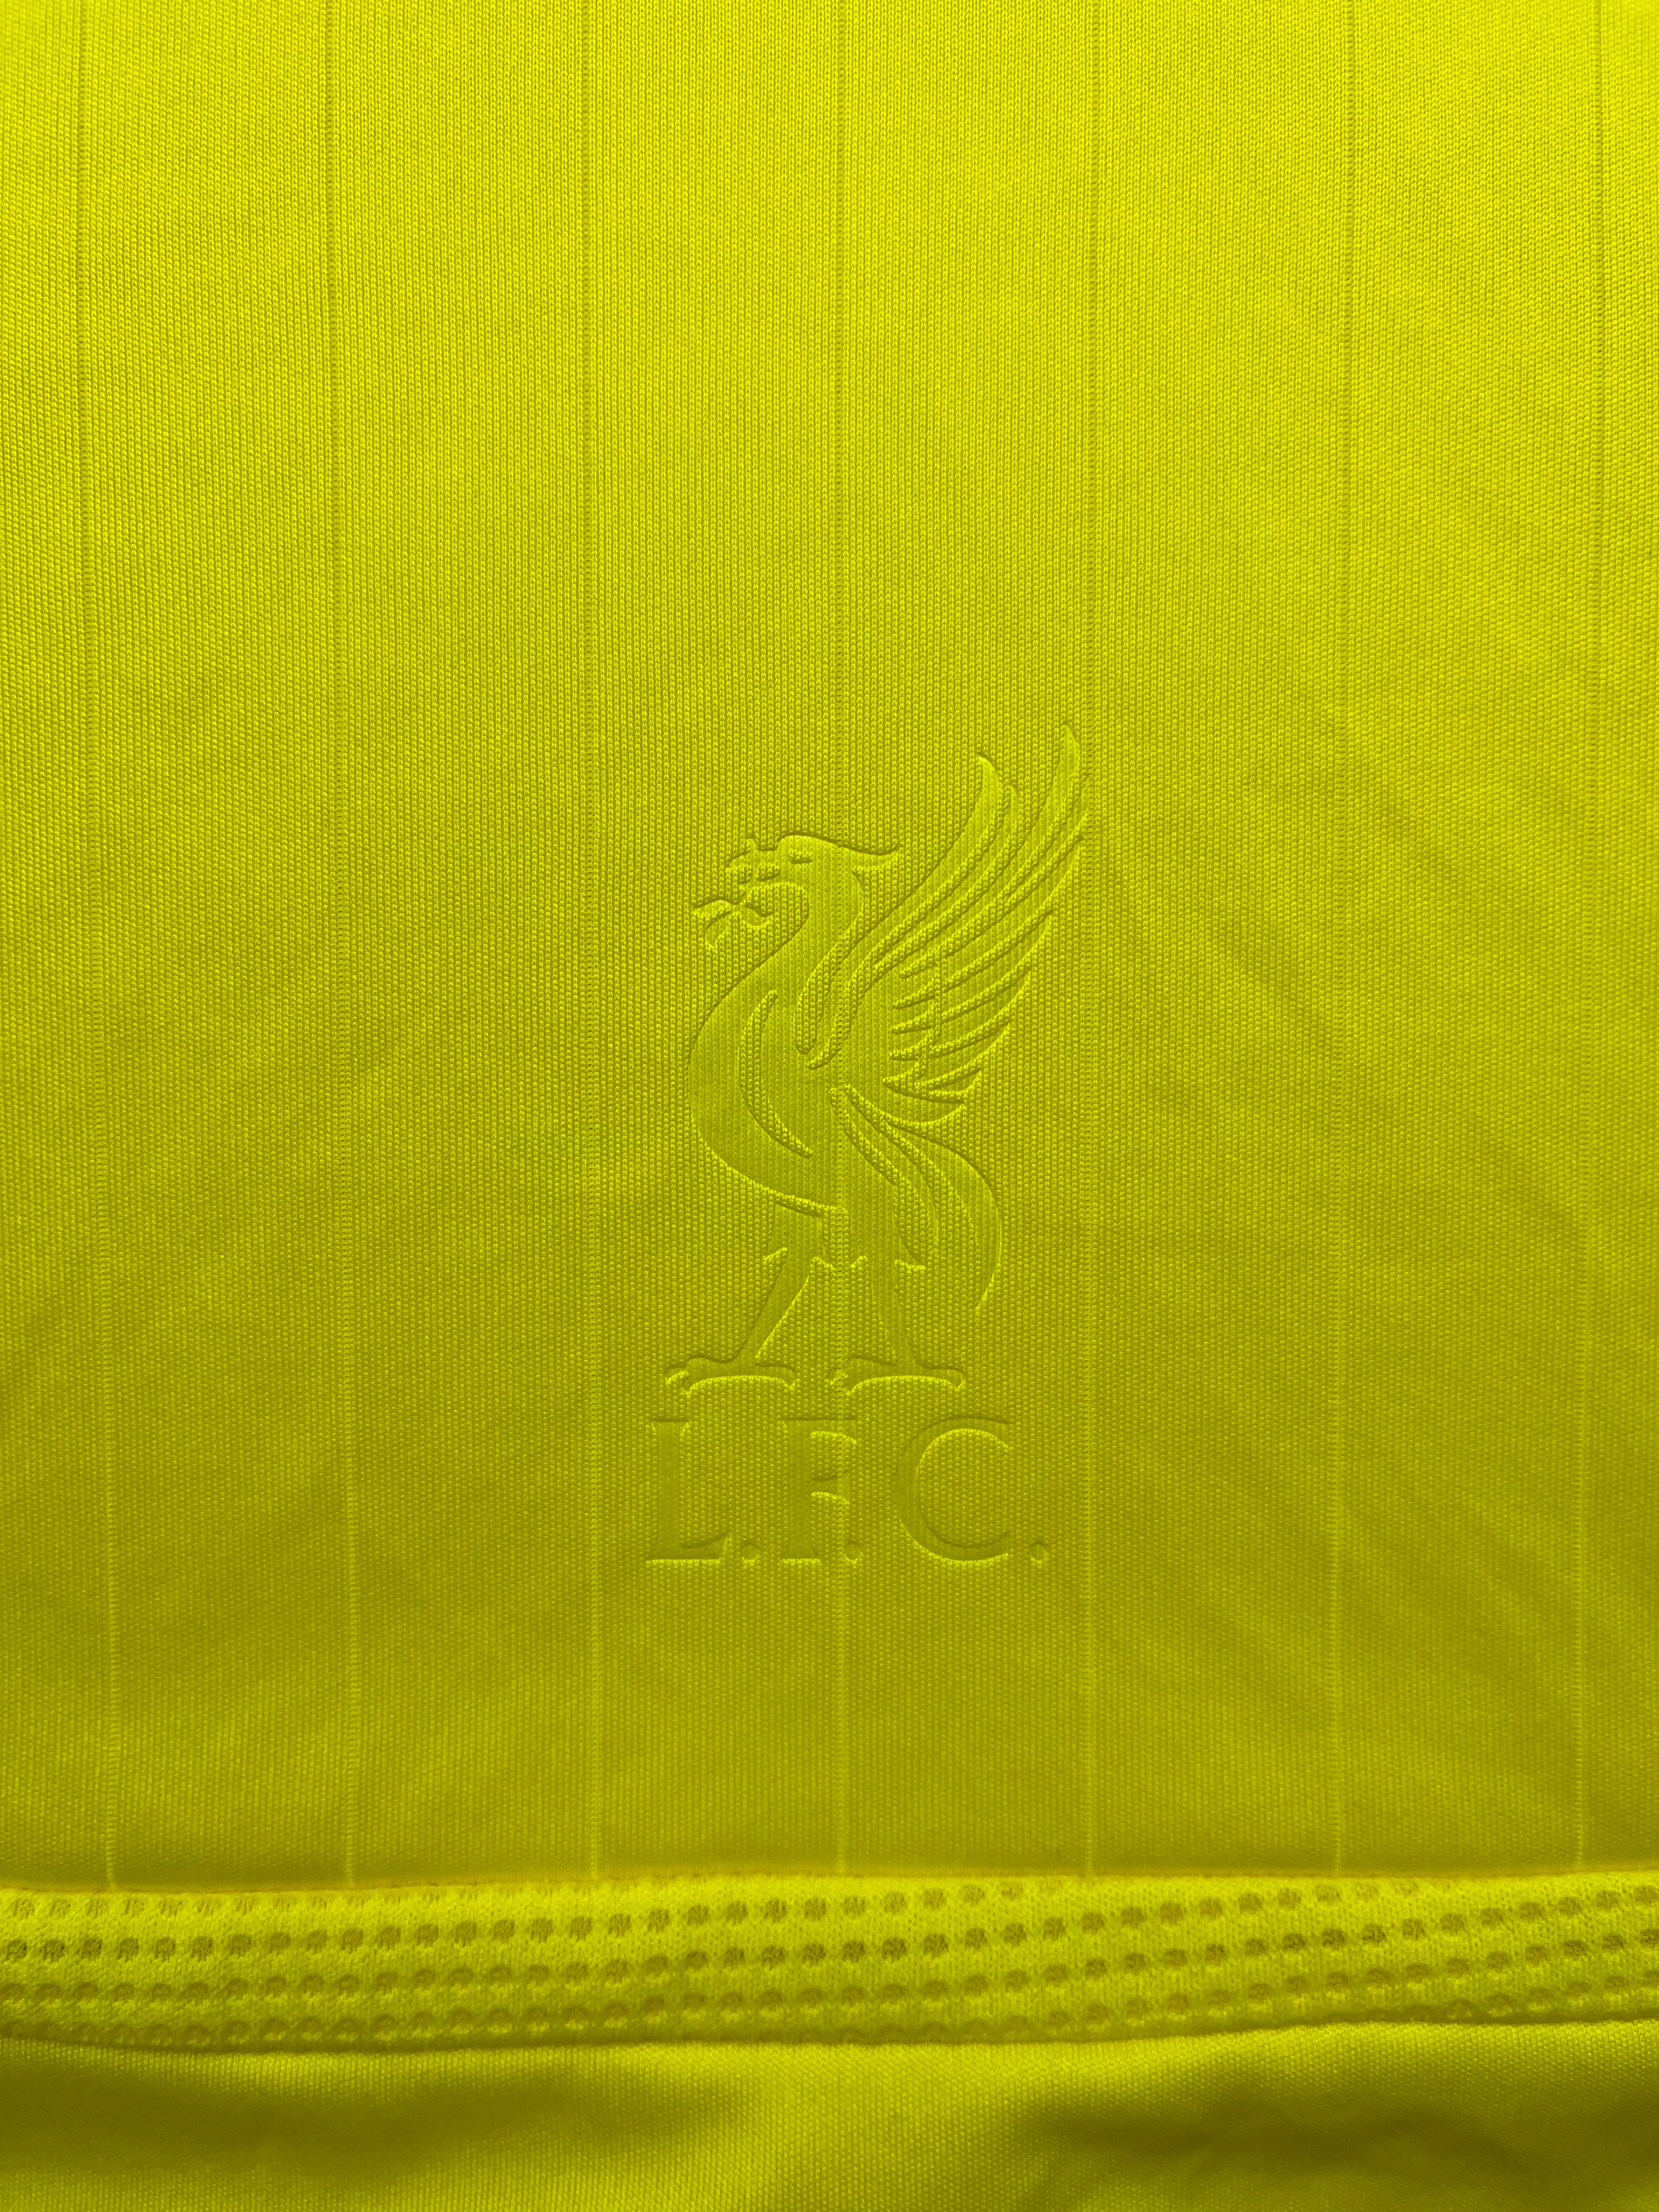 2006/07 Liverpool Away Shirt Gerrard #8 (M) 8.5/10